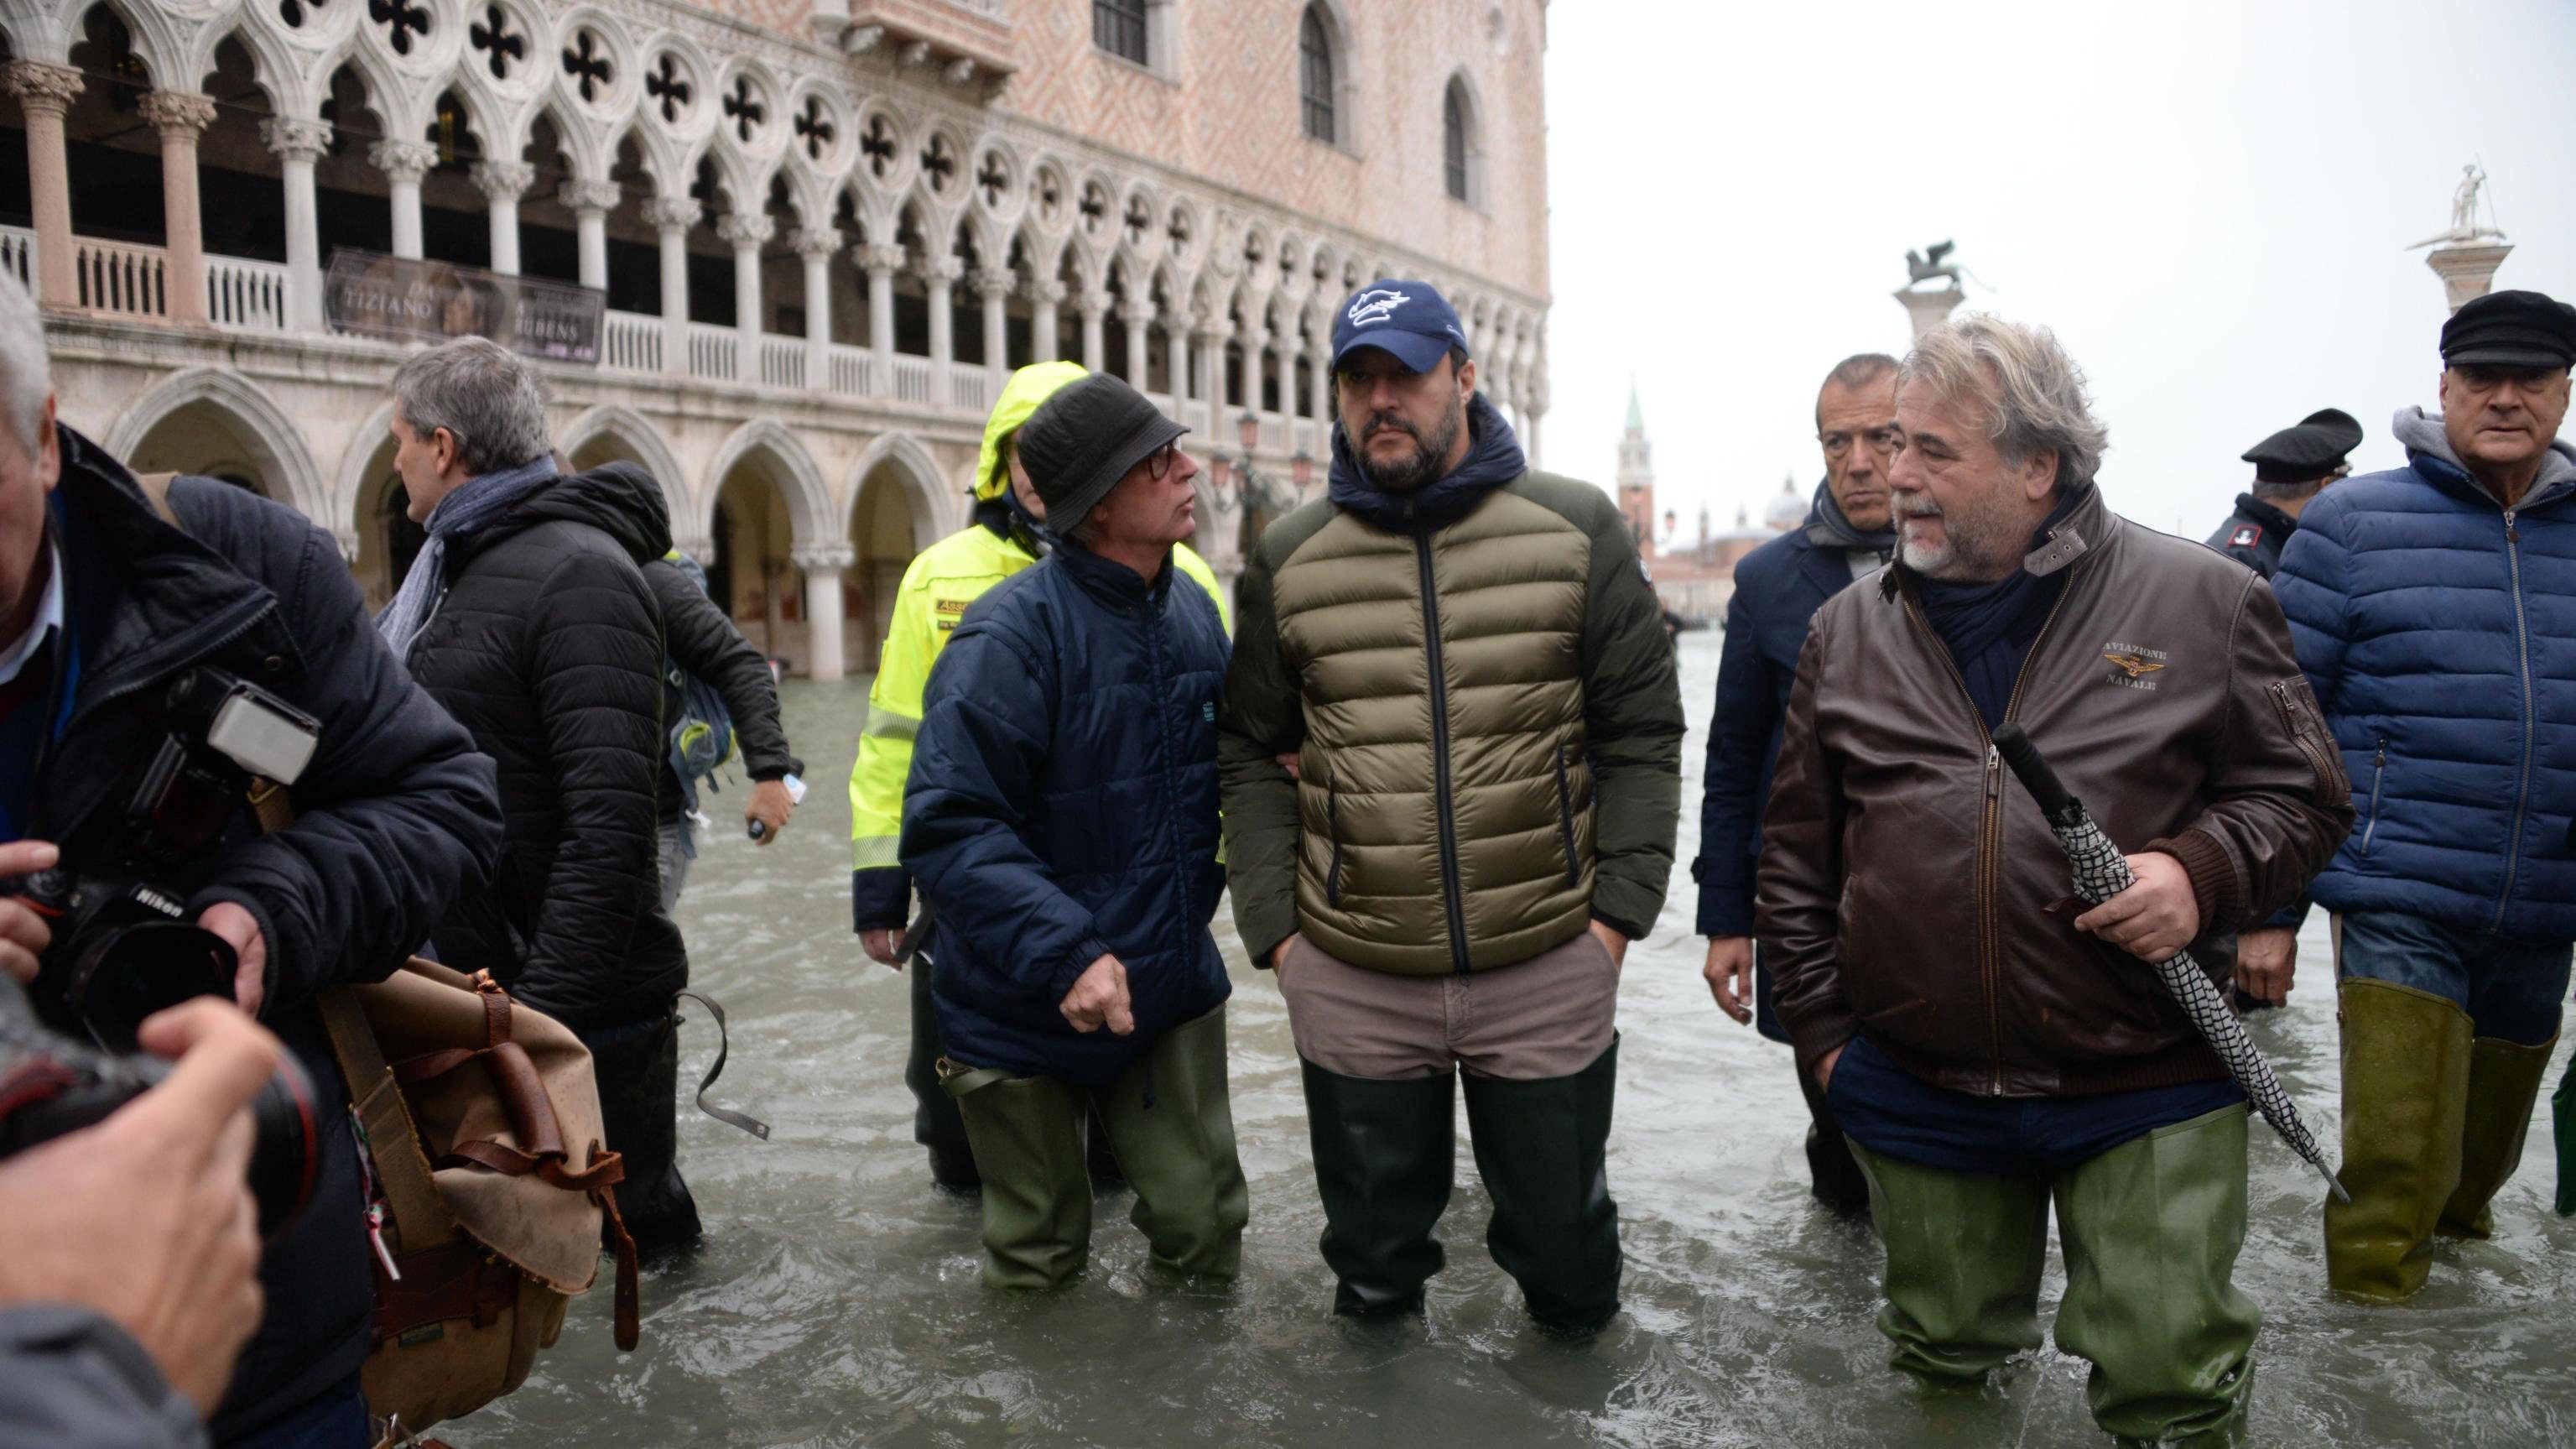 Újabb árhullám érte el Velencét, lezárták a Szent Márk teret